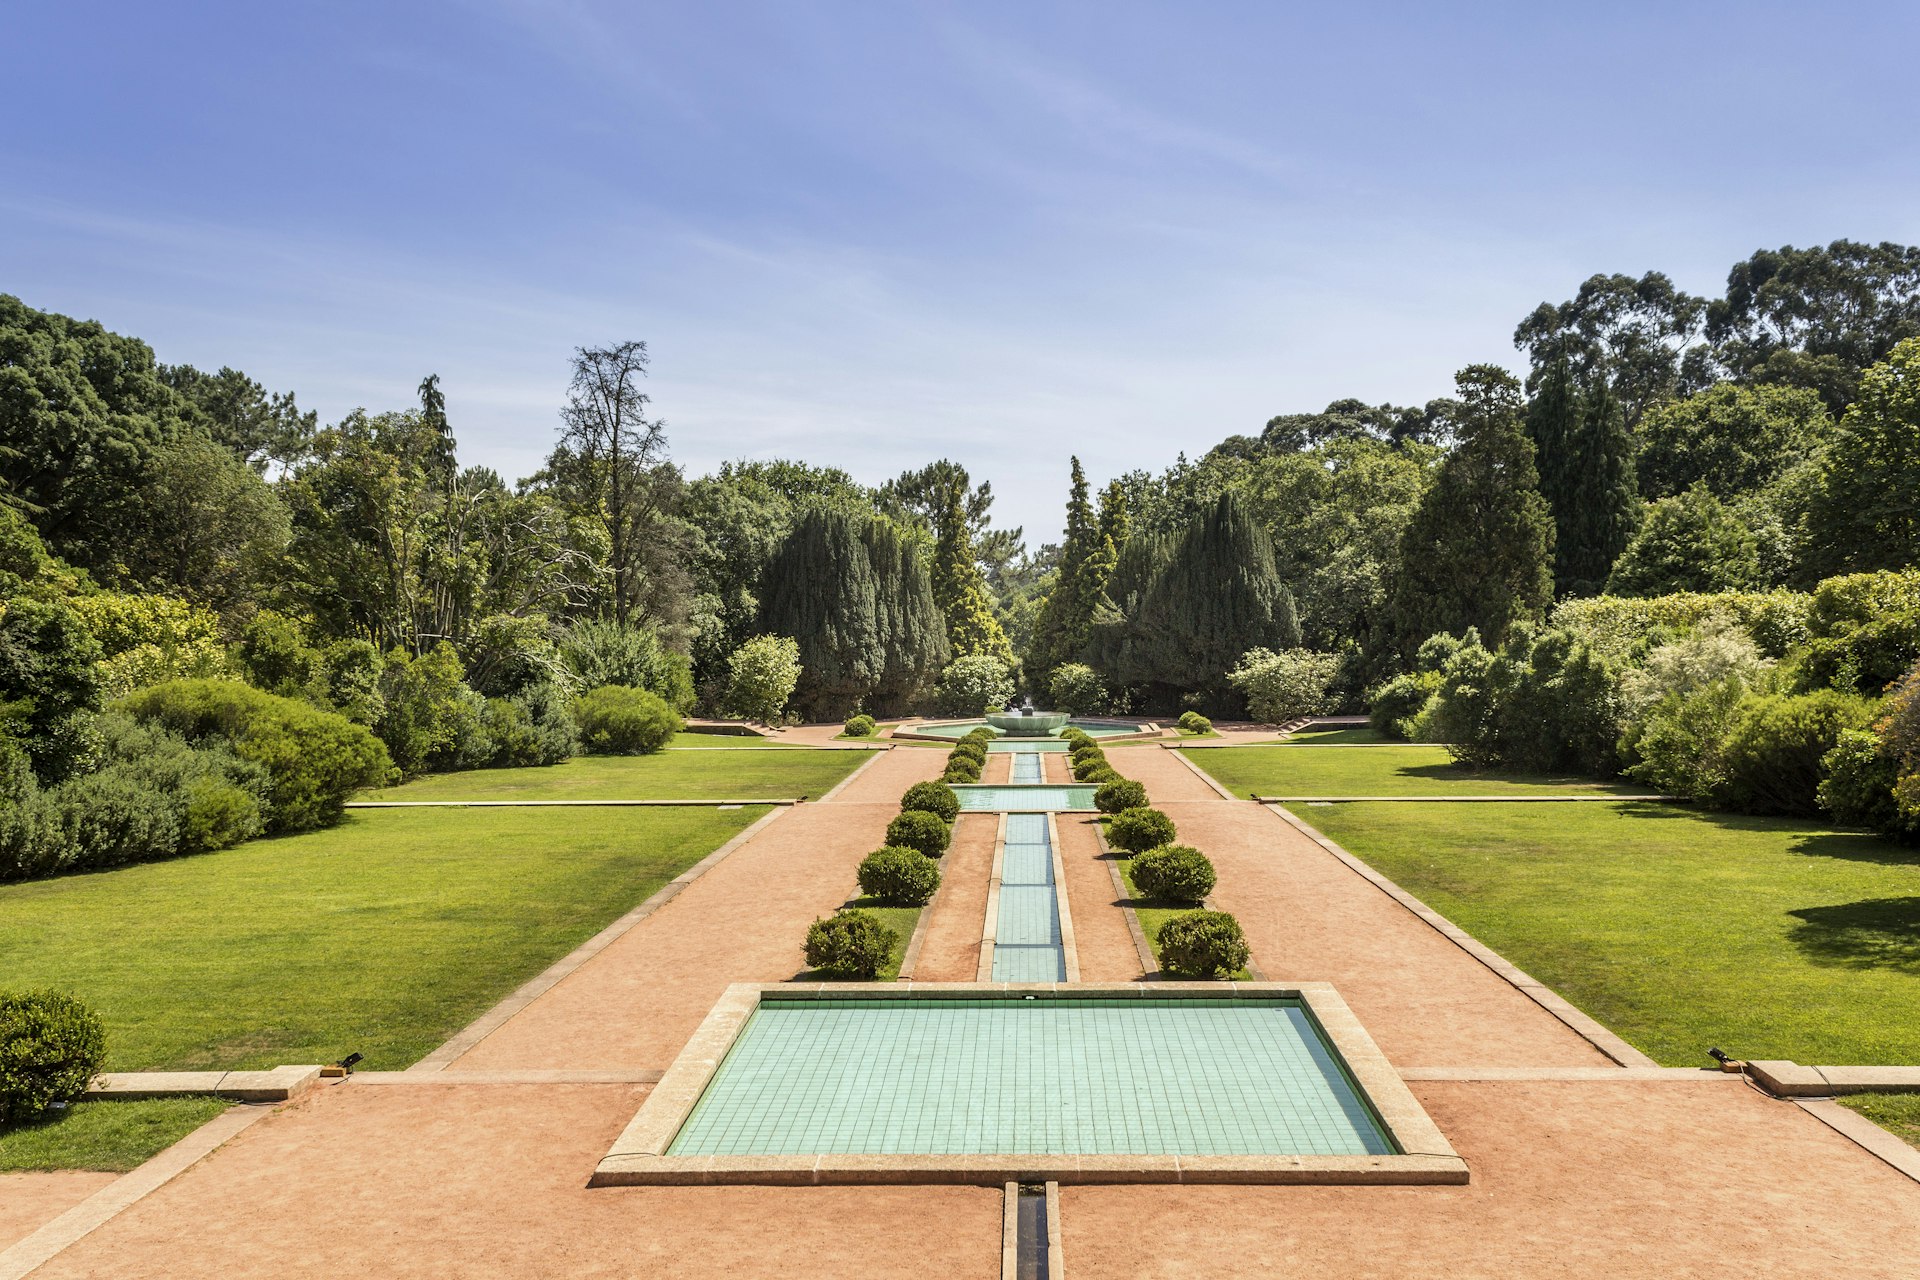 Serralves gardens serralves gardens, a green park that extends over 18 hectares and includes the Museum of Contemporary Art (Serralves Foundation) Porto Portugal